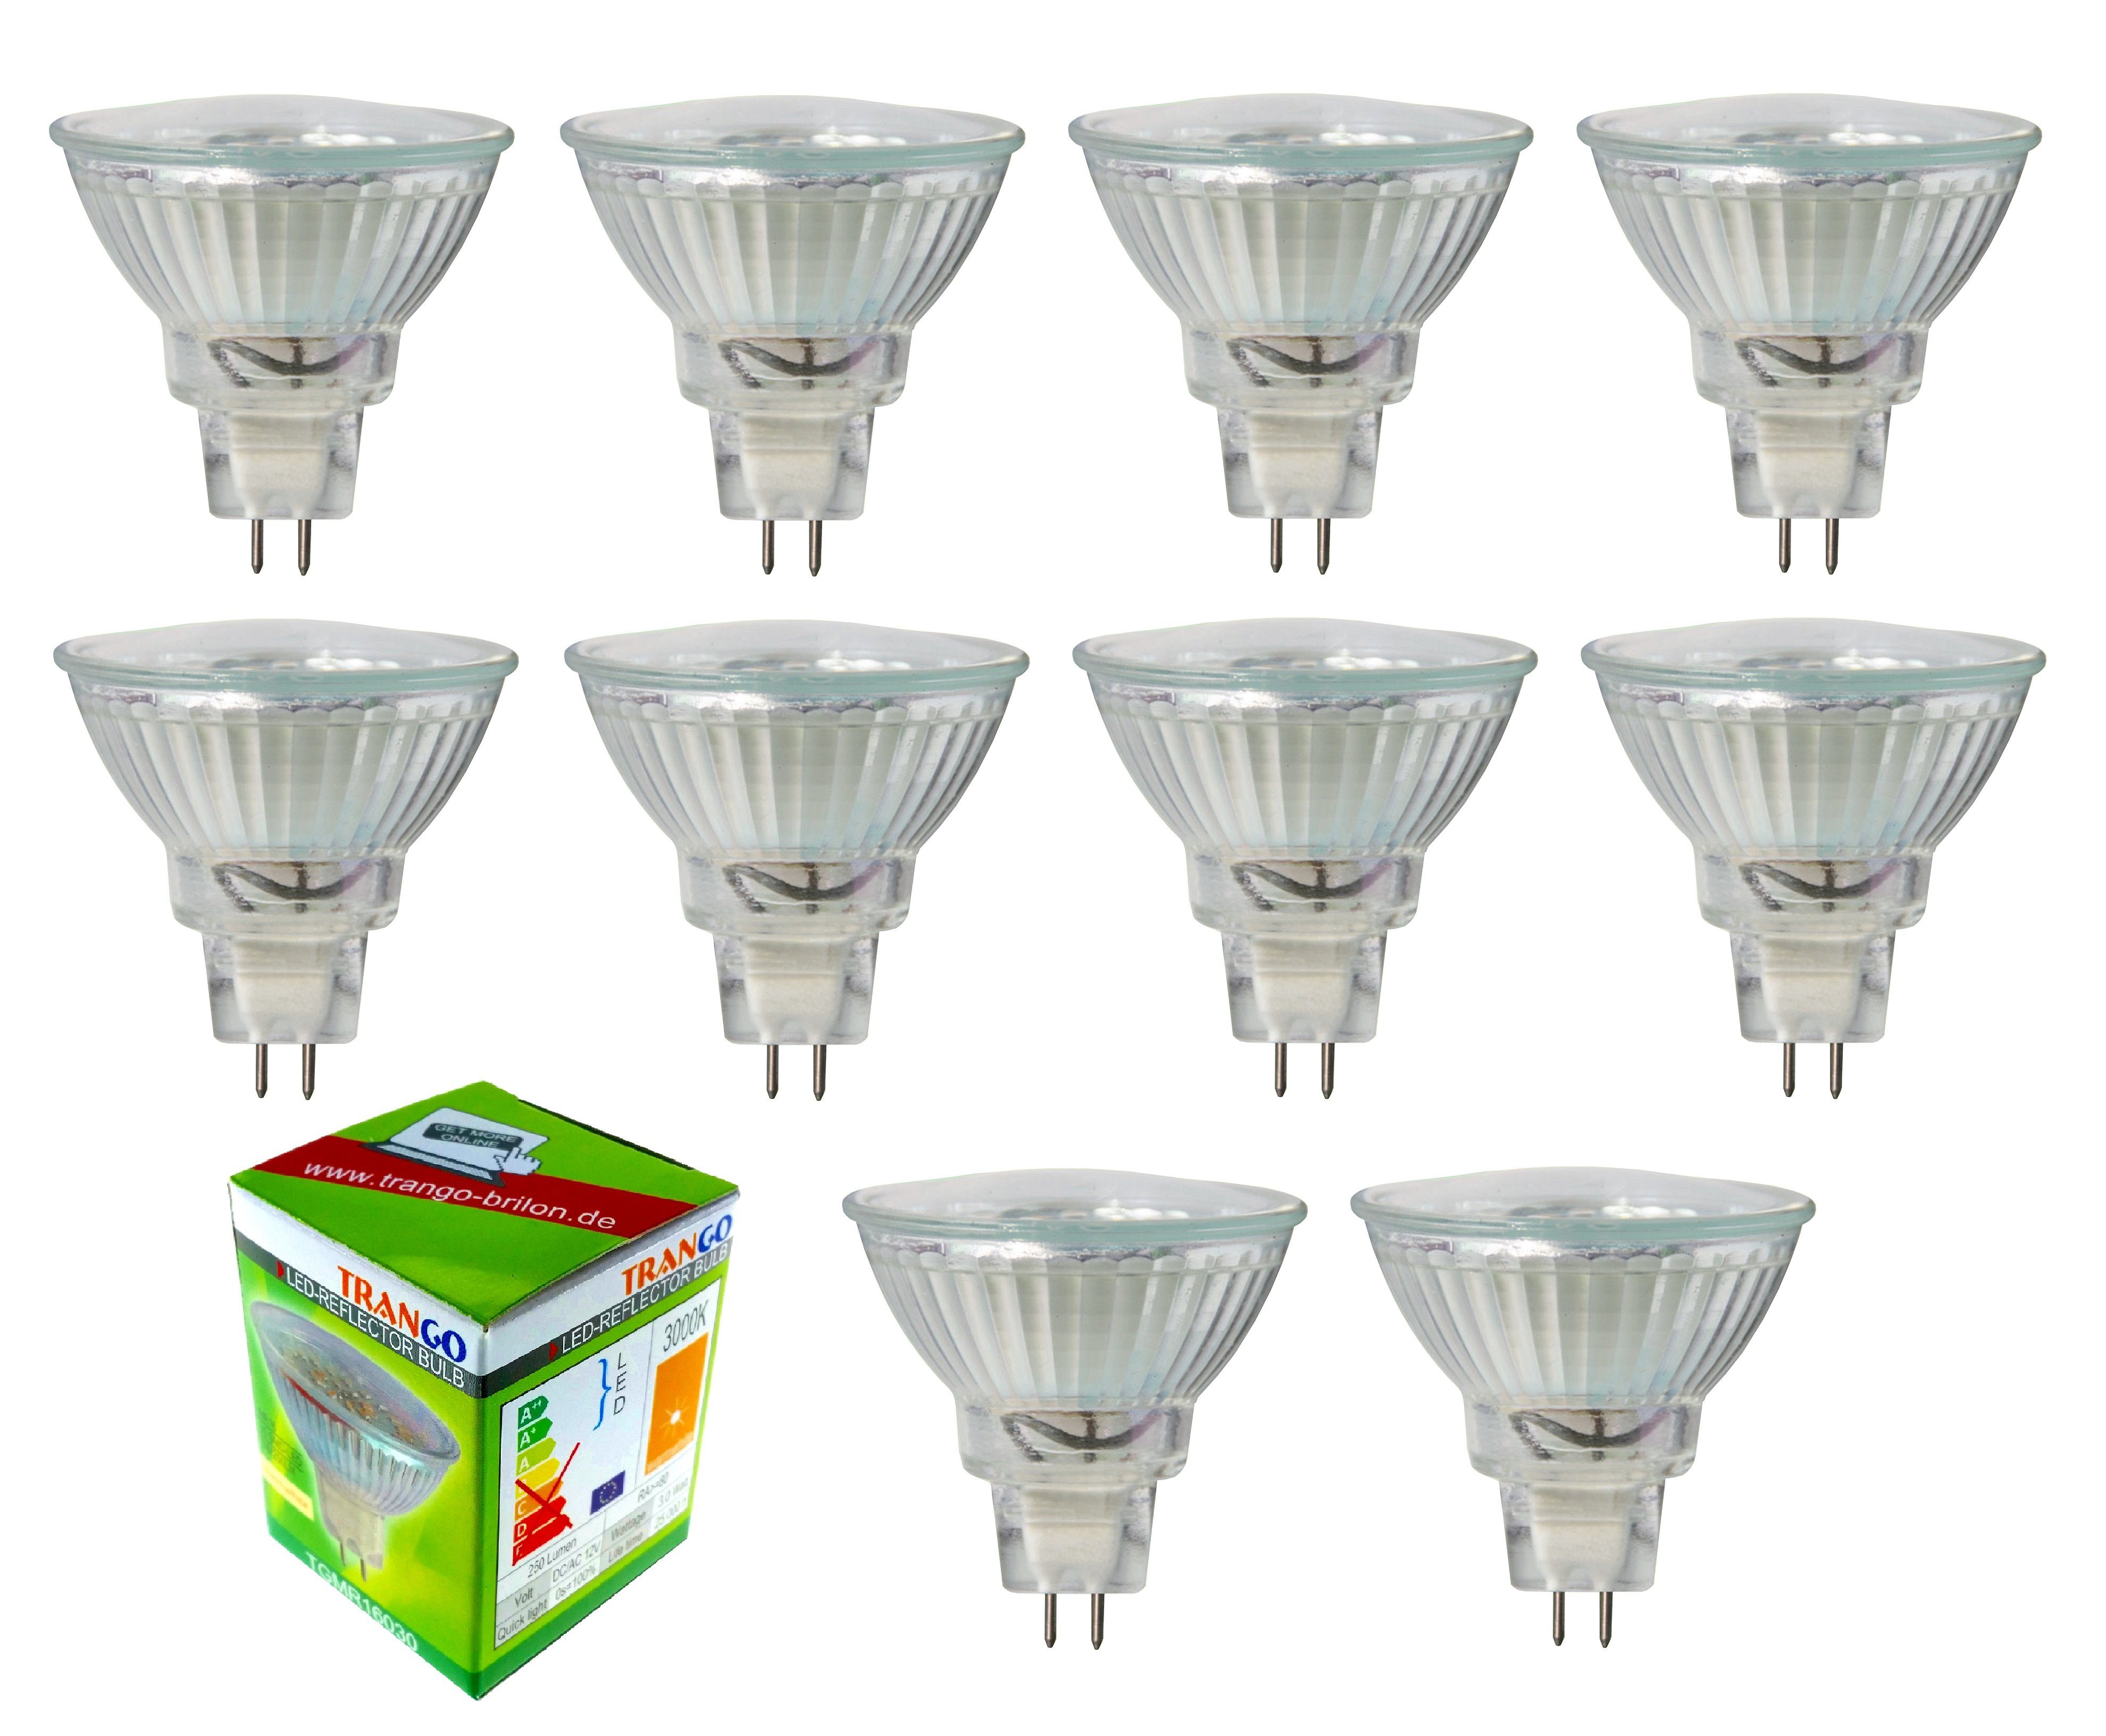 TRANGO LED-Leuchtmittel, 10er Set MR16030 LED Leuchtmittel mit MR16 Fassung zum Austausch von herkömmlichen Halogen Leuchtmittel MR16 I GU5.3 I G4 12 Volt 3000K warmweiß, 10 St., 10er Set MR16030 LED Leuchtmittel mit MR16 Fassung zum Austausch von herkömmlichen Halogen Leuchtmittel MR16 I GU5.3 I G4 12 Volt 3000K warm-weiß Glühlampe, Reflektor Lampe, LED Birnen, Glühlampe, Reflektor Lampe, LED Birnen